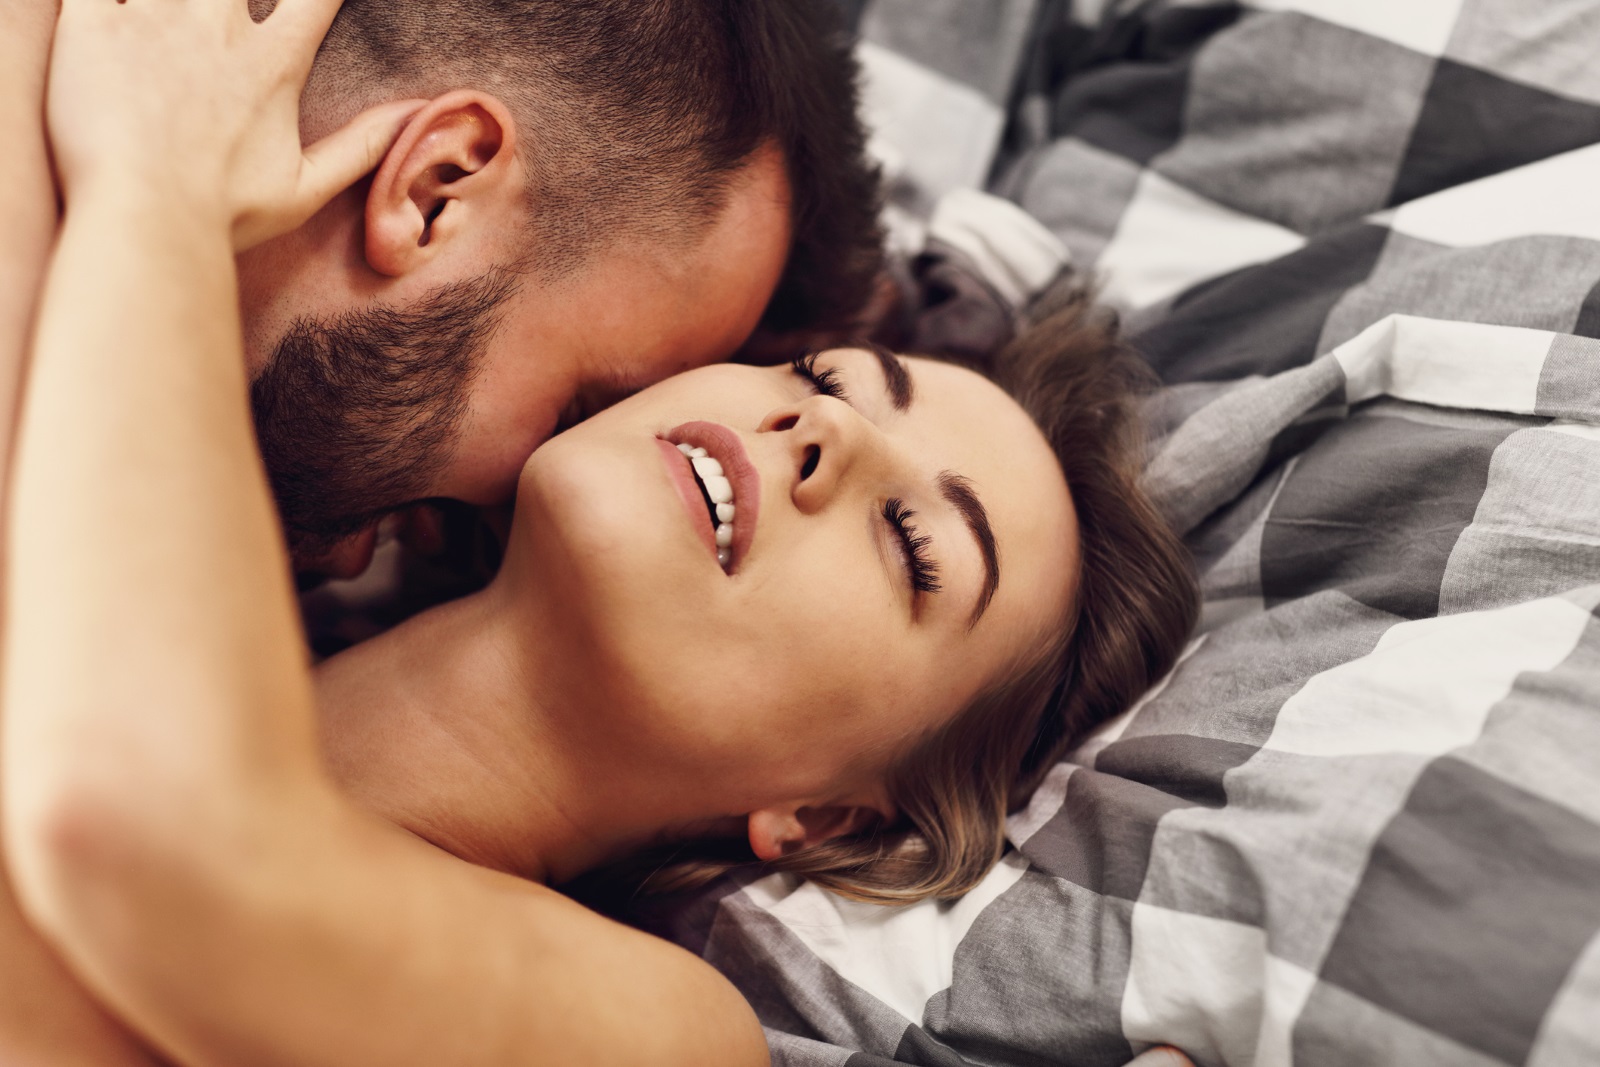 <p>В дамския списък на първо място очаквано фигурира любовната игра, посочена от 92 процента от участничките в допитването. Размяната ласки преди същинския полов акт подкрепят 68 процента от мъжете. Съдейки по общите резултати, водещата сексуална фантазия за 2020 г. за представителите и на двата пола е телефонният секс (80 процента).</p>